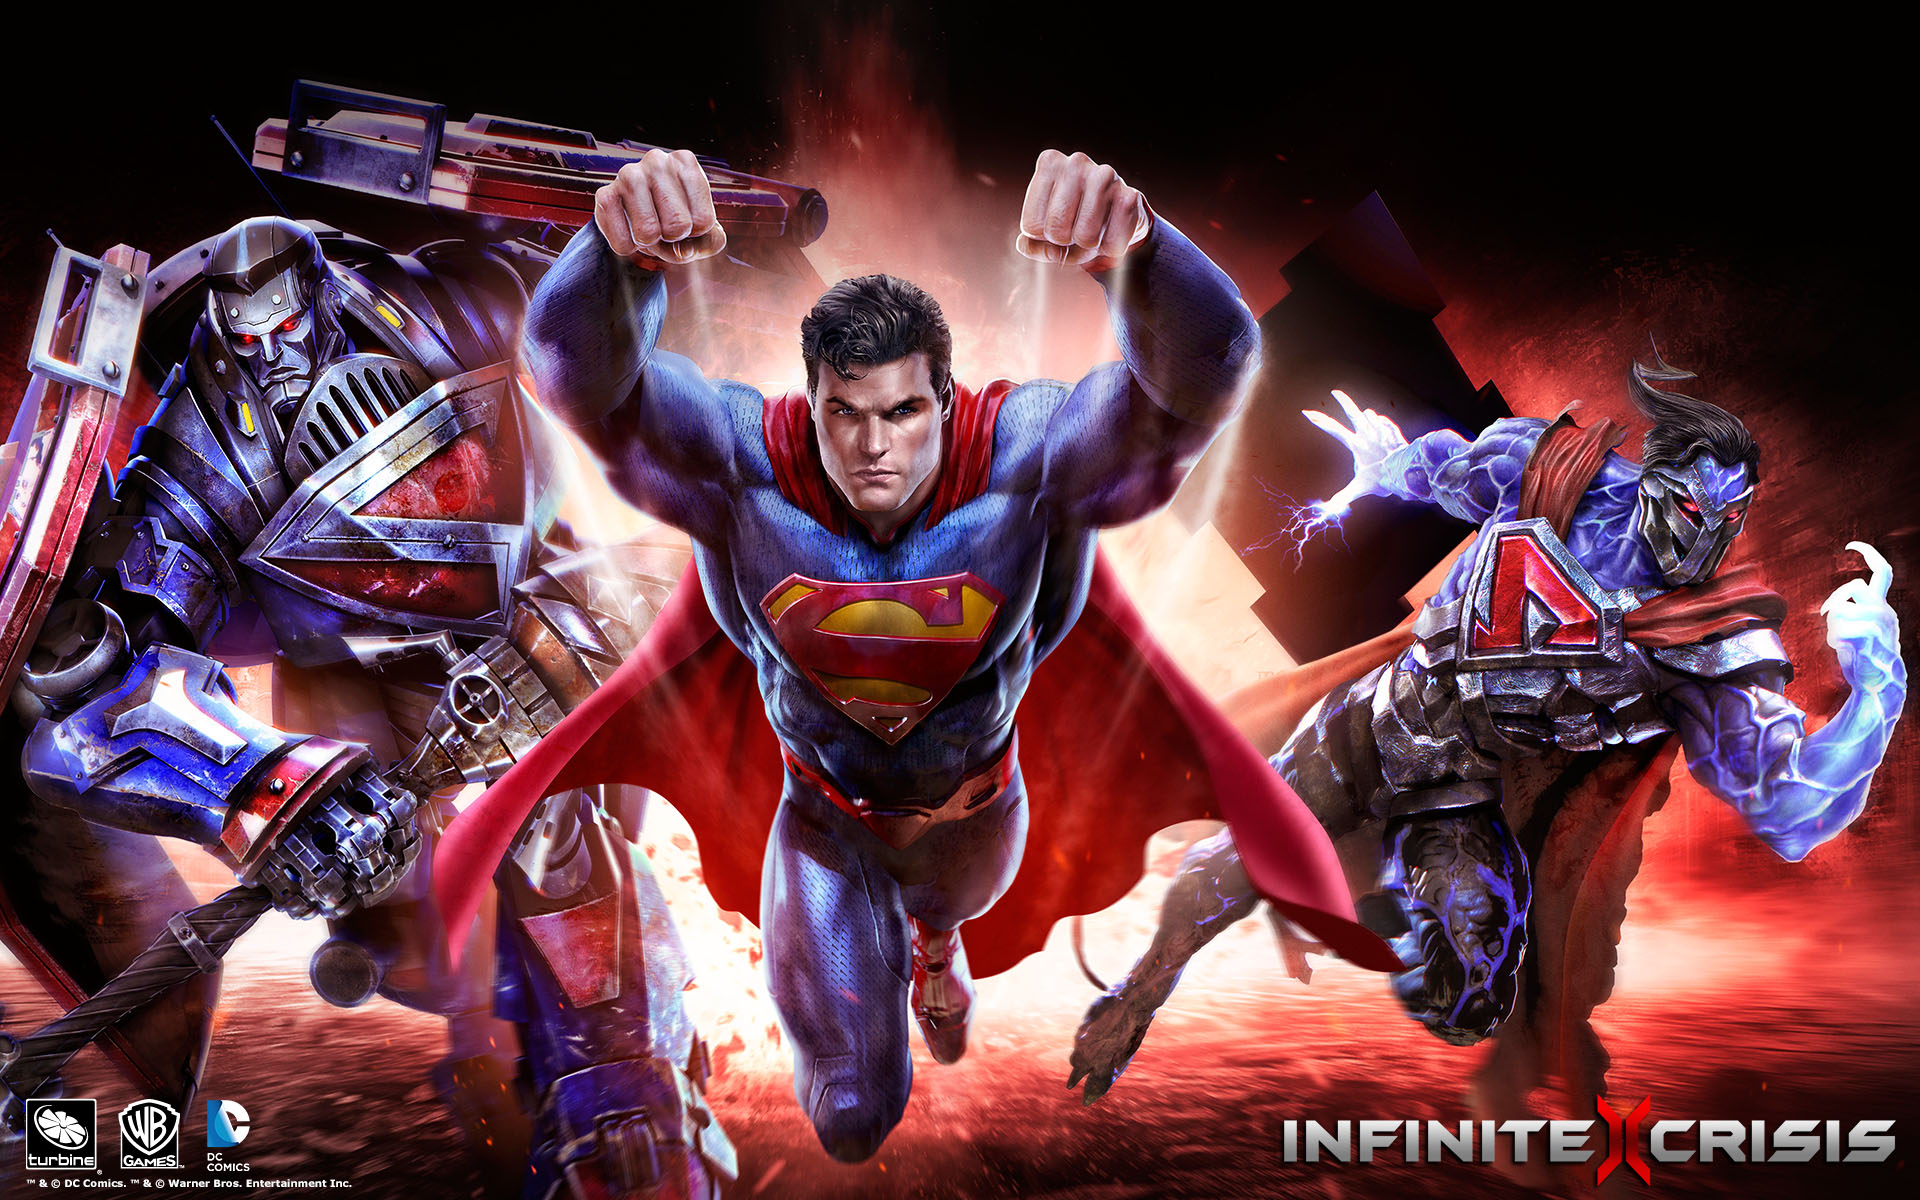 Descarga gratuita de fondo de pantalla para móvil de Superhombre, Videojuego, Infinite Crisis.